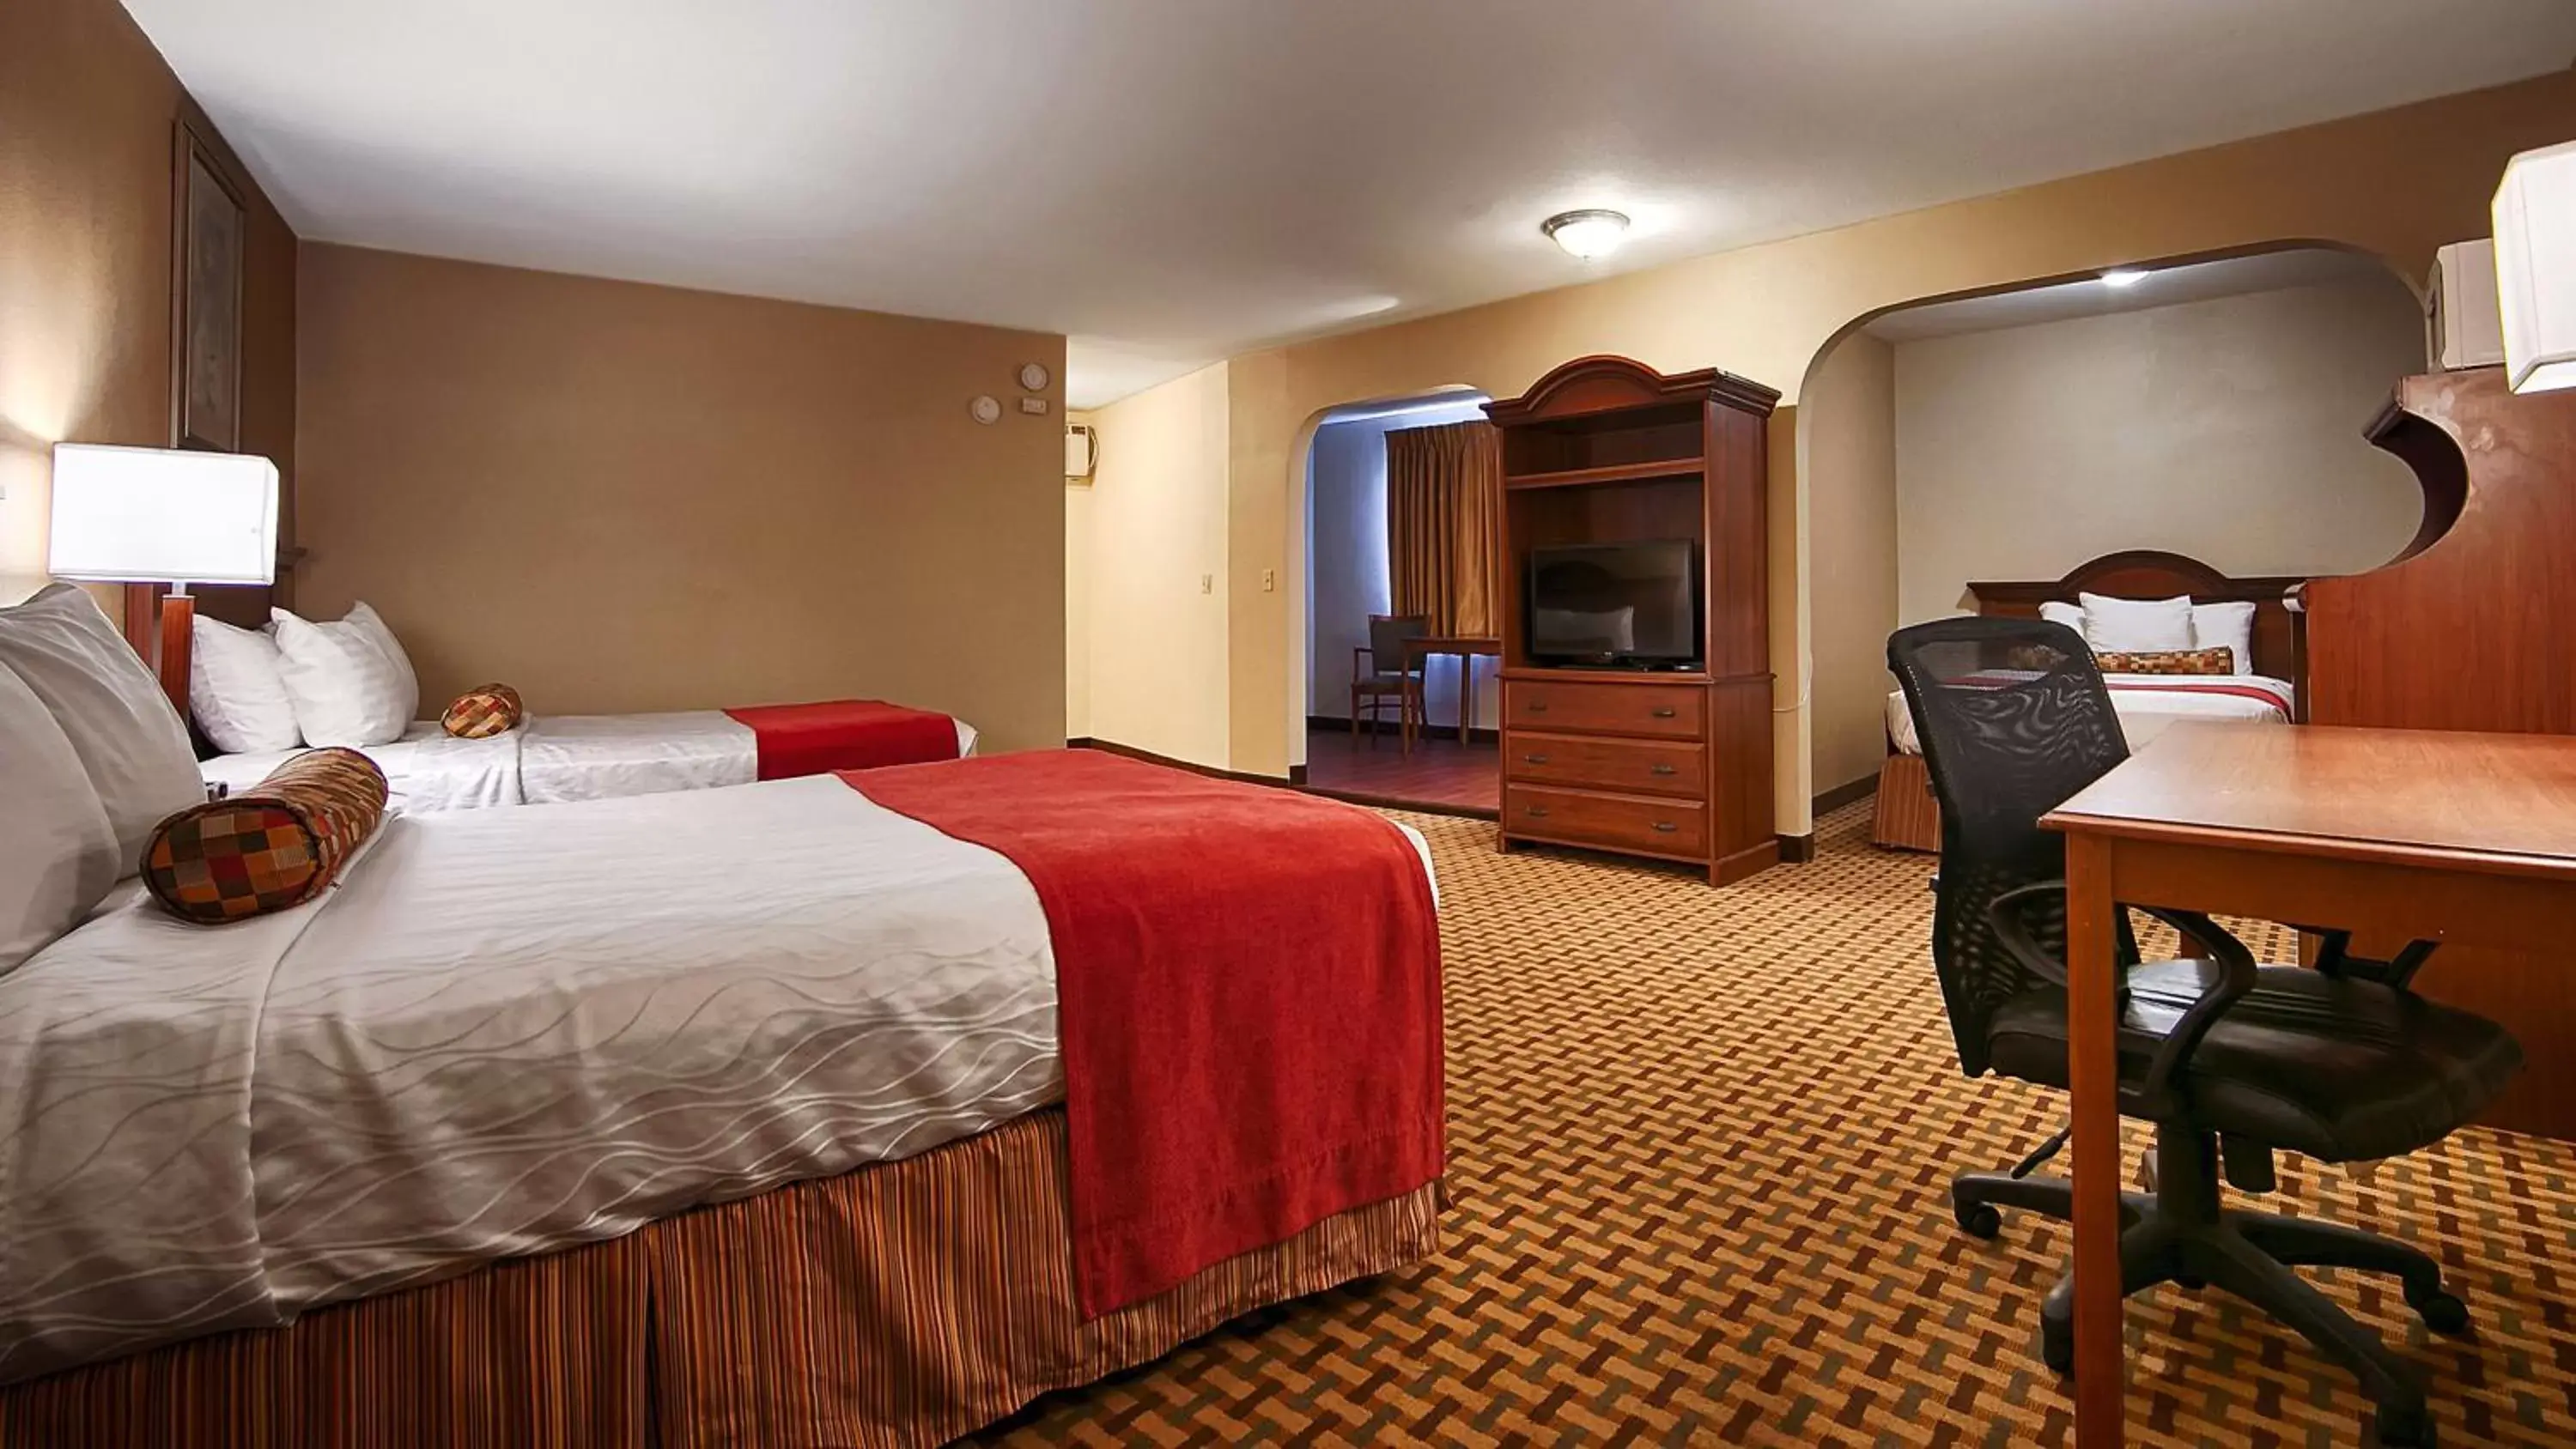 Bedroom, Room Photo in Best Western Heritage Inn